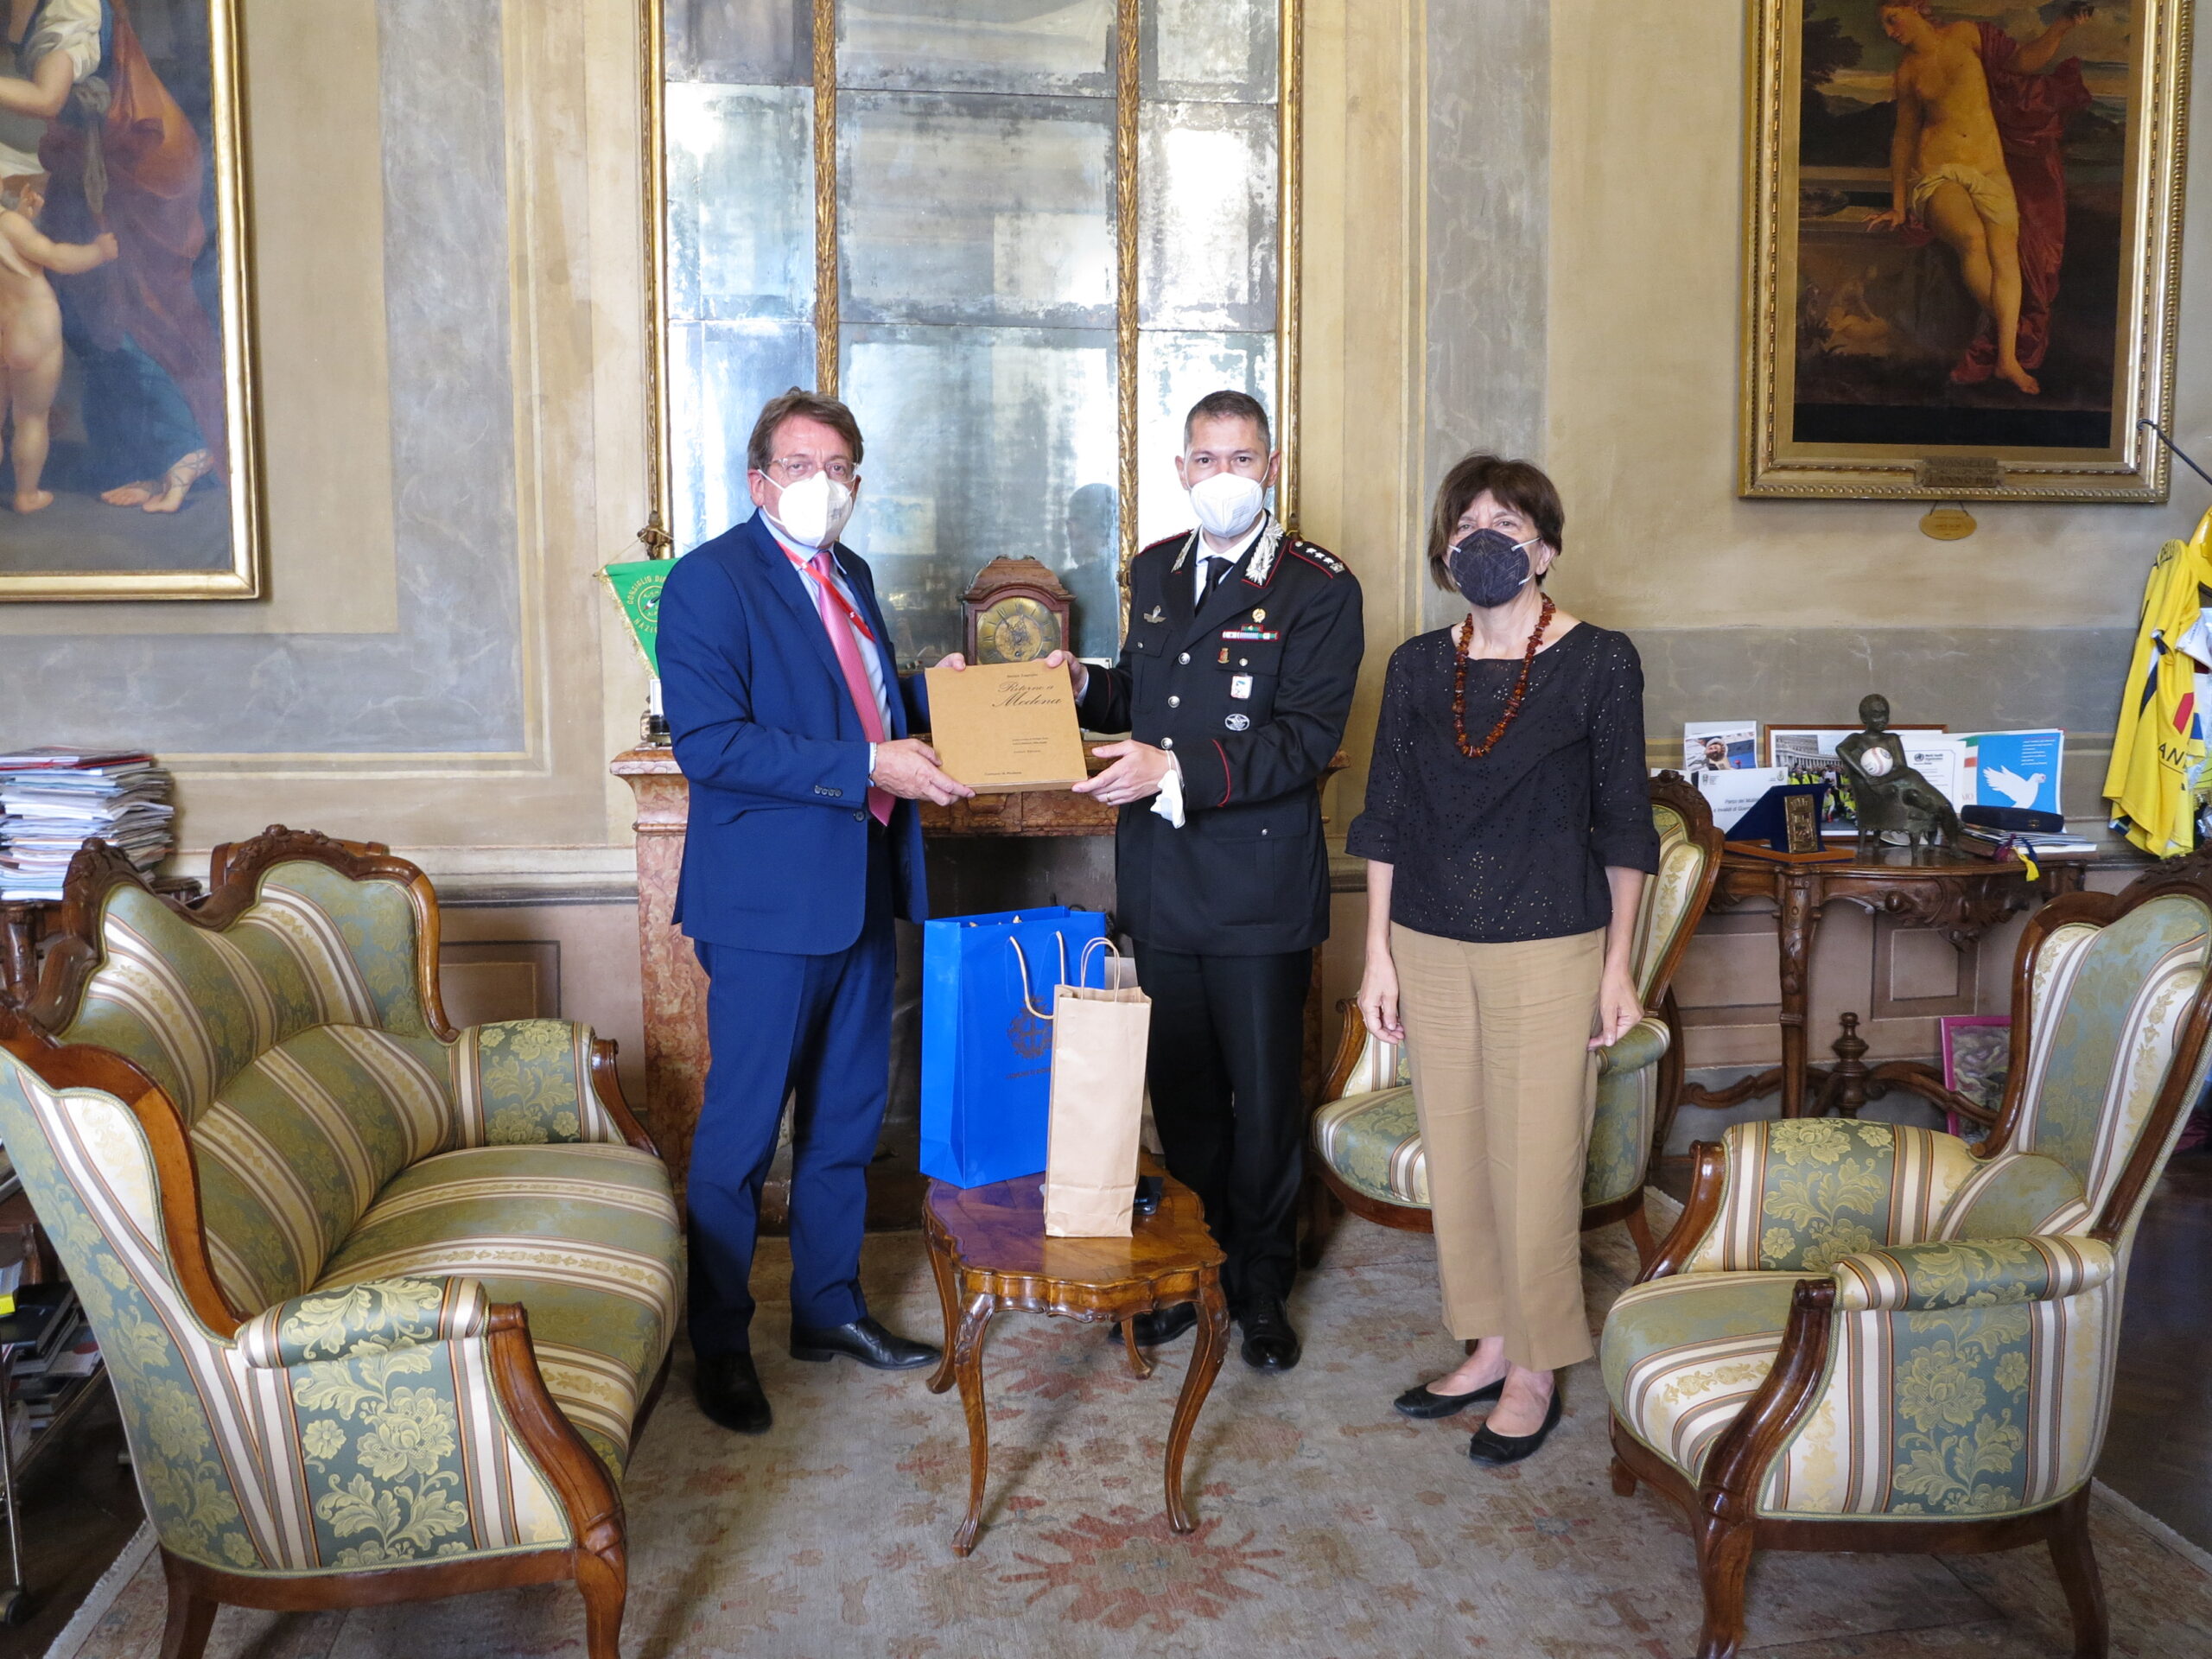  “Con l’arma collaborazione per la sicurezza di Modena”